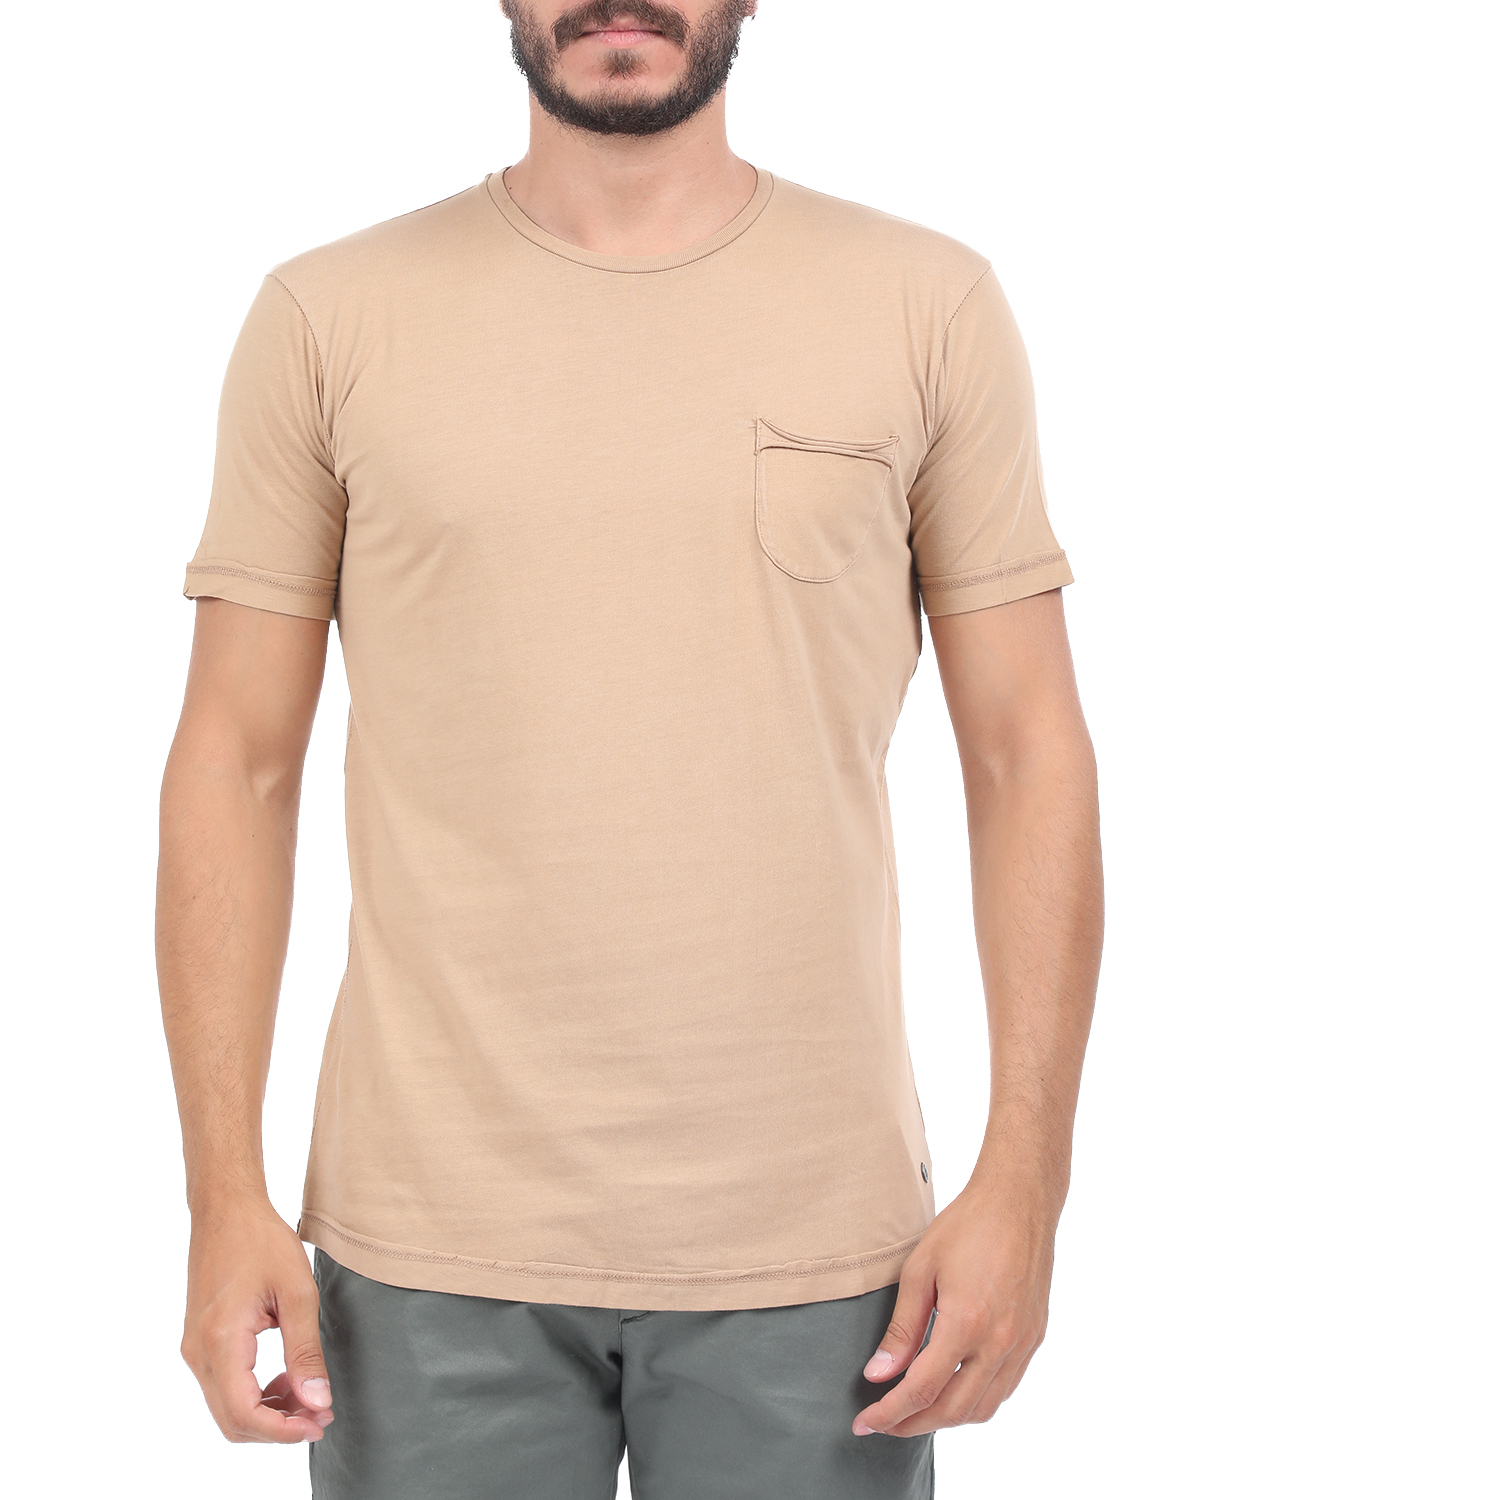 Ανδρικά/Ρούχα/Μπλούζες/Κοντομάνικες BATTERY - Ανδρική μπλούζα BATTERY SOLID 3 GARMENT DYΕ μπεζ